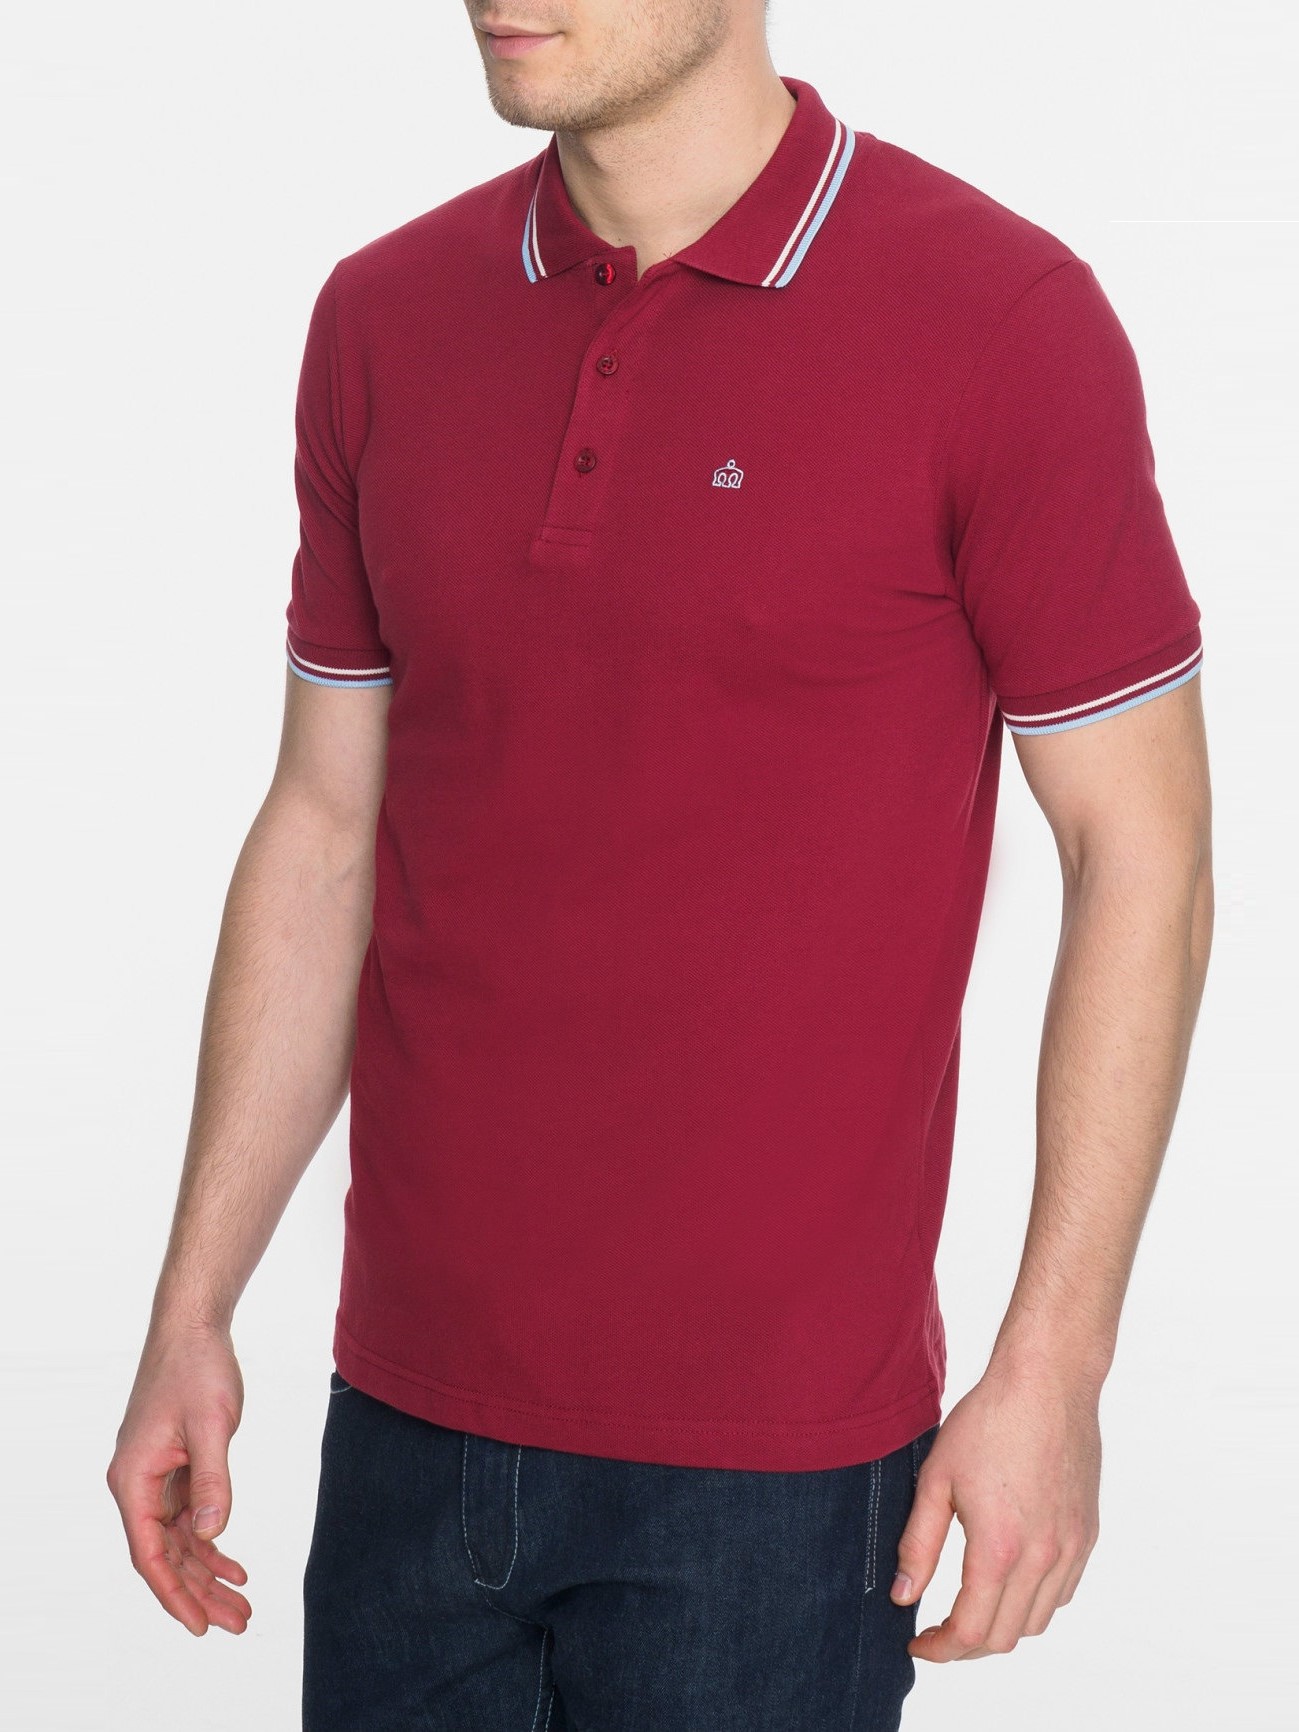 Мужская Рубашка Поло Card с коротким рукавом, классическая, хлопковая (пике), бордовая (claret) — купить в фирменном интернет магазине Merc